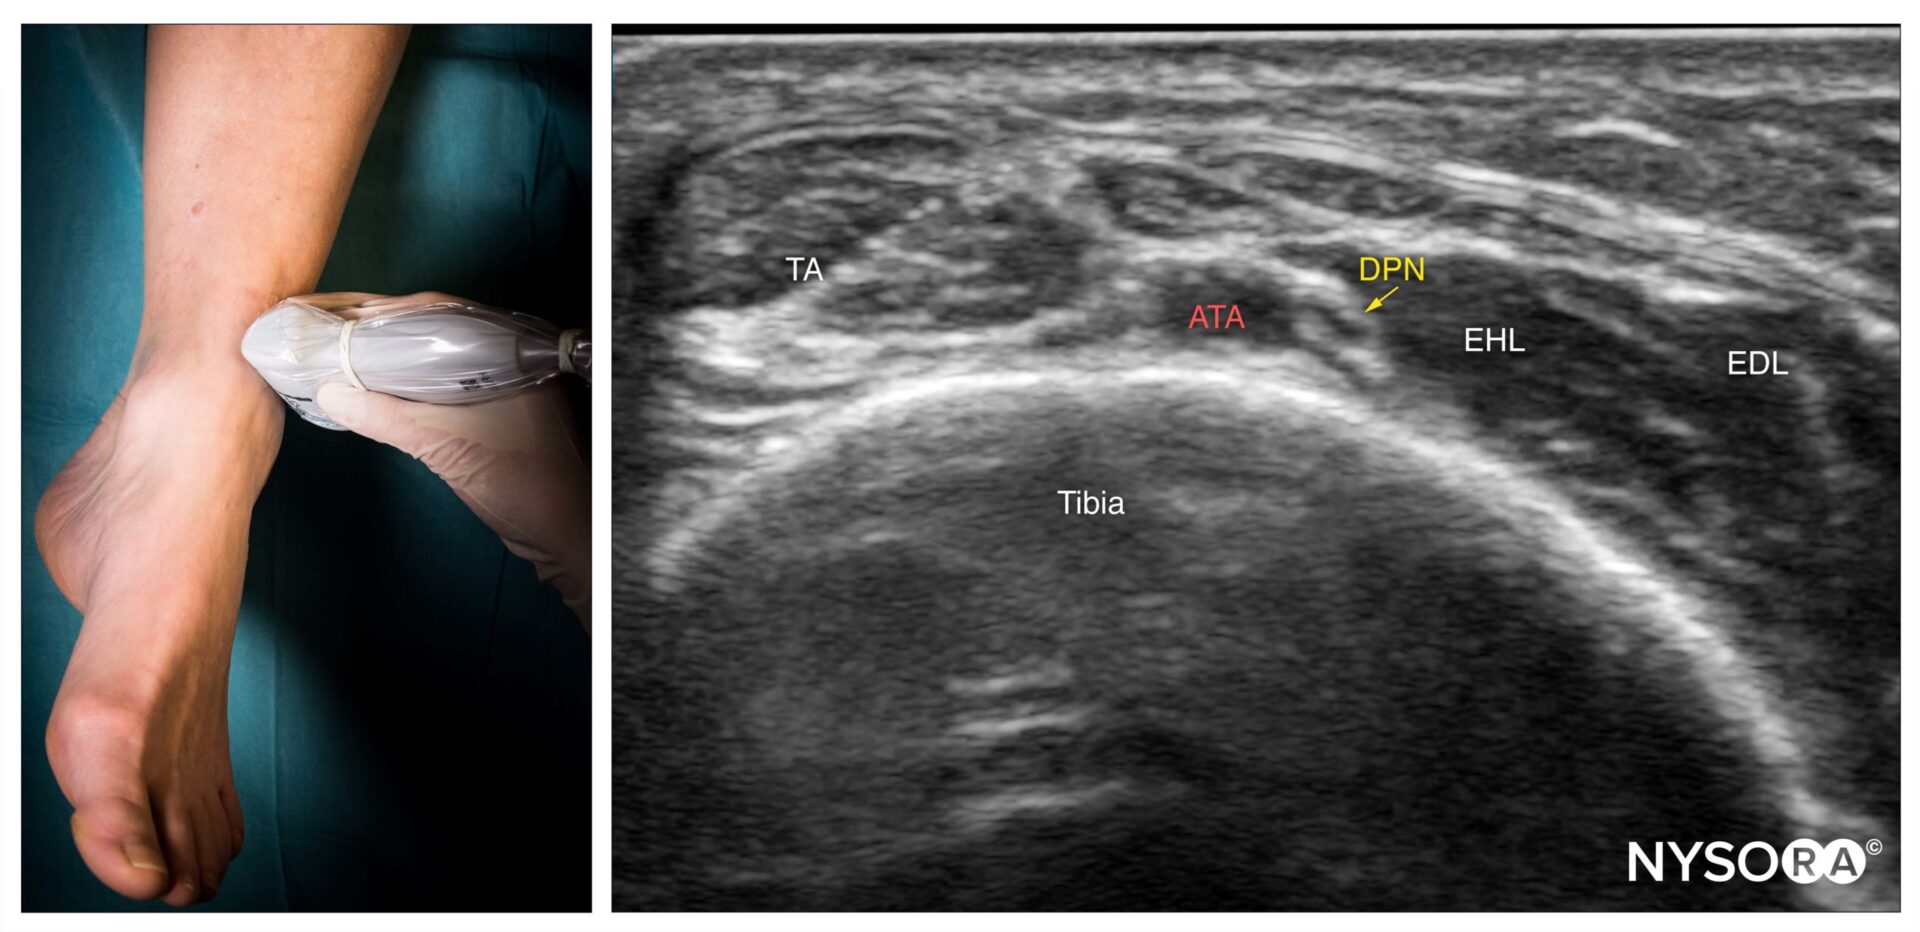 Ultrasound-Guided Ankle Block: NYSORA Web App - NYSORA